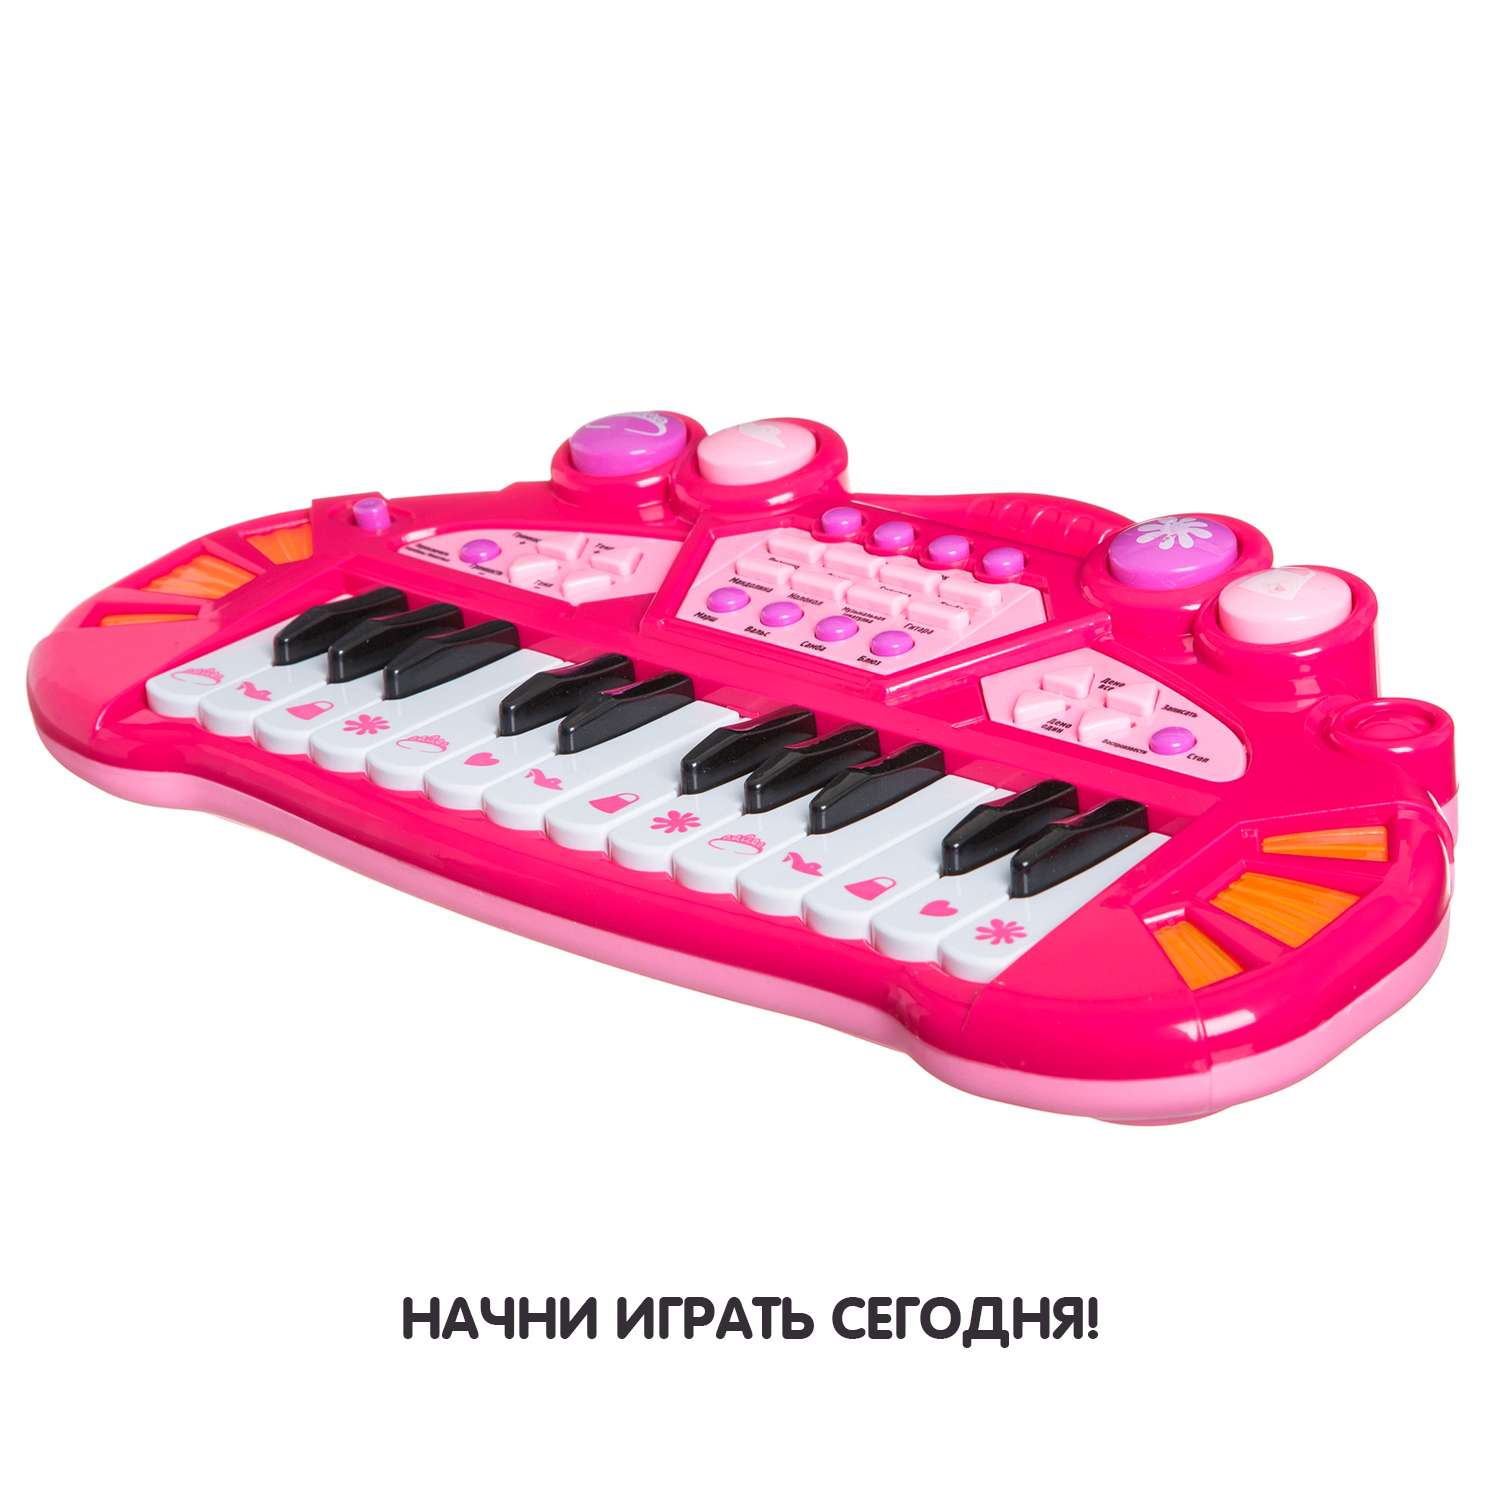 Синтезатор BONDIBON 24 клавиши со световыми эффектами розового цвета - фото 2